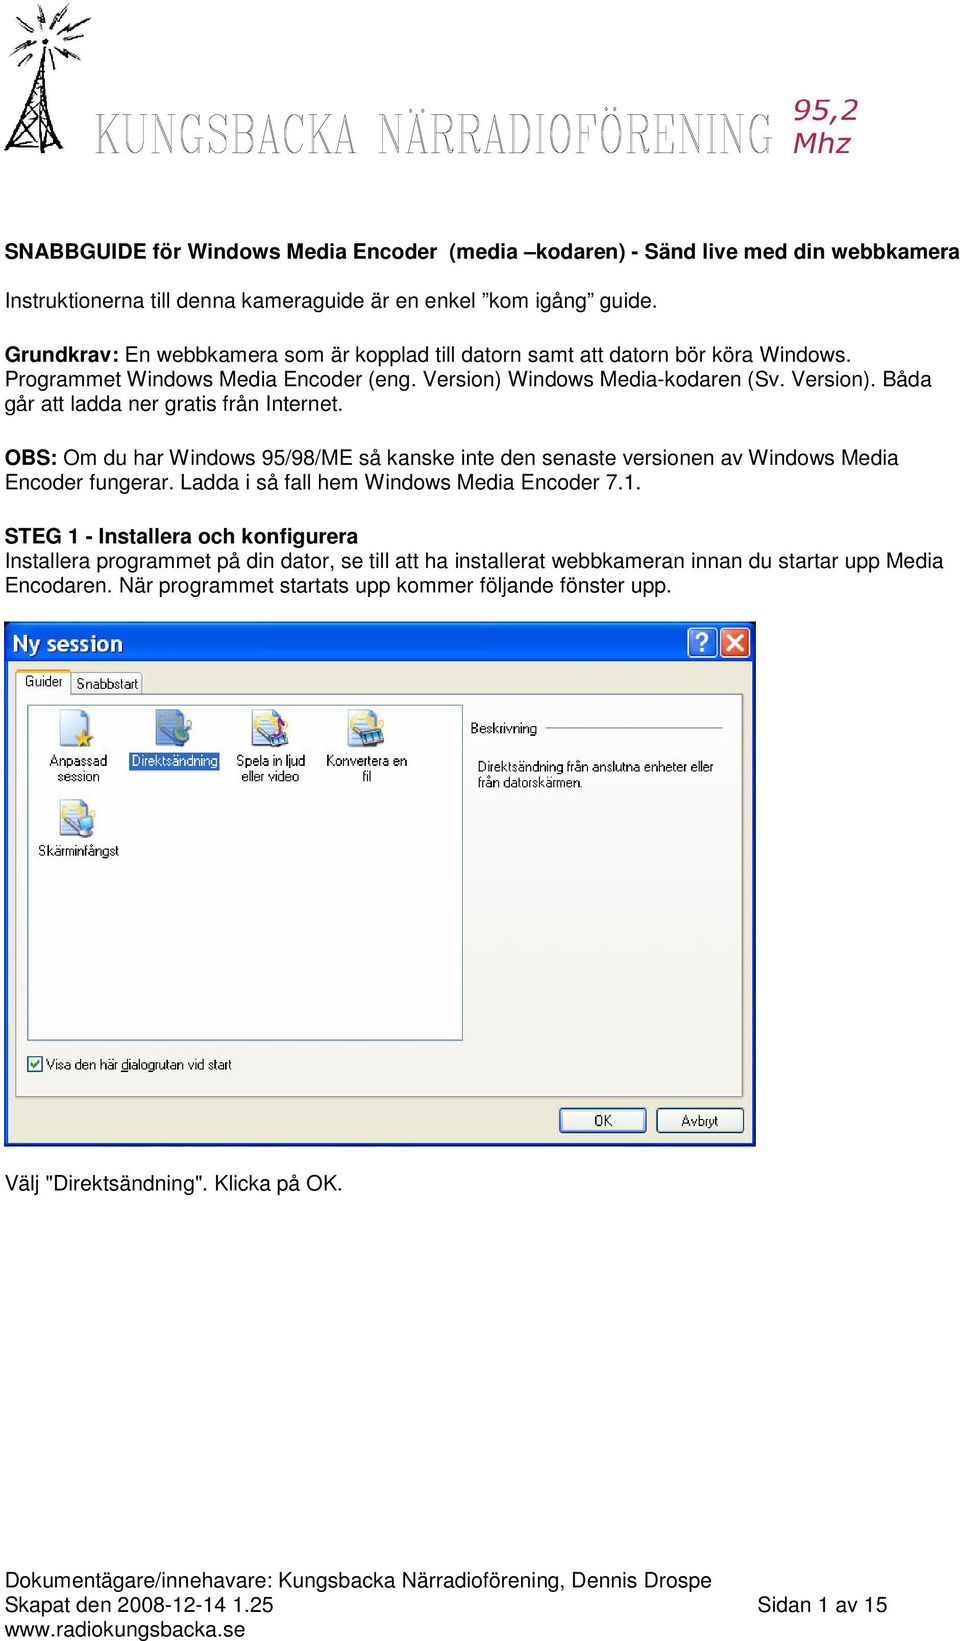 OBS: Om du har Windows 95/98/ME så kanske inte den senaste versionen av Windows Media Encoder fungerar. Ladda i så fall hem Windows Media Encoder 7.1.